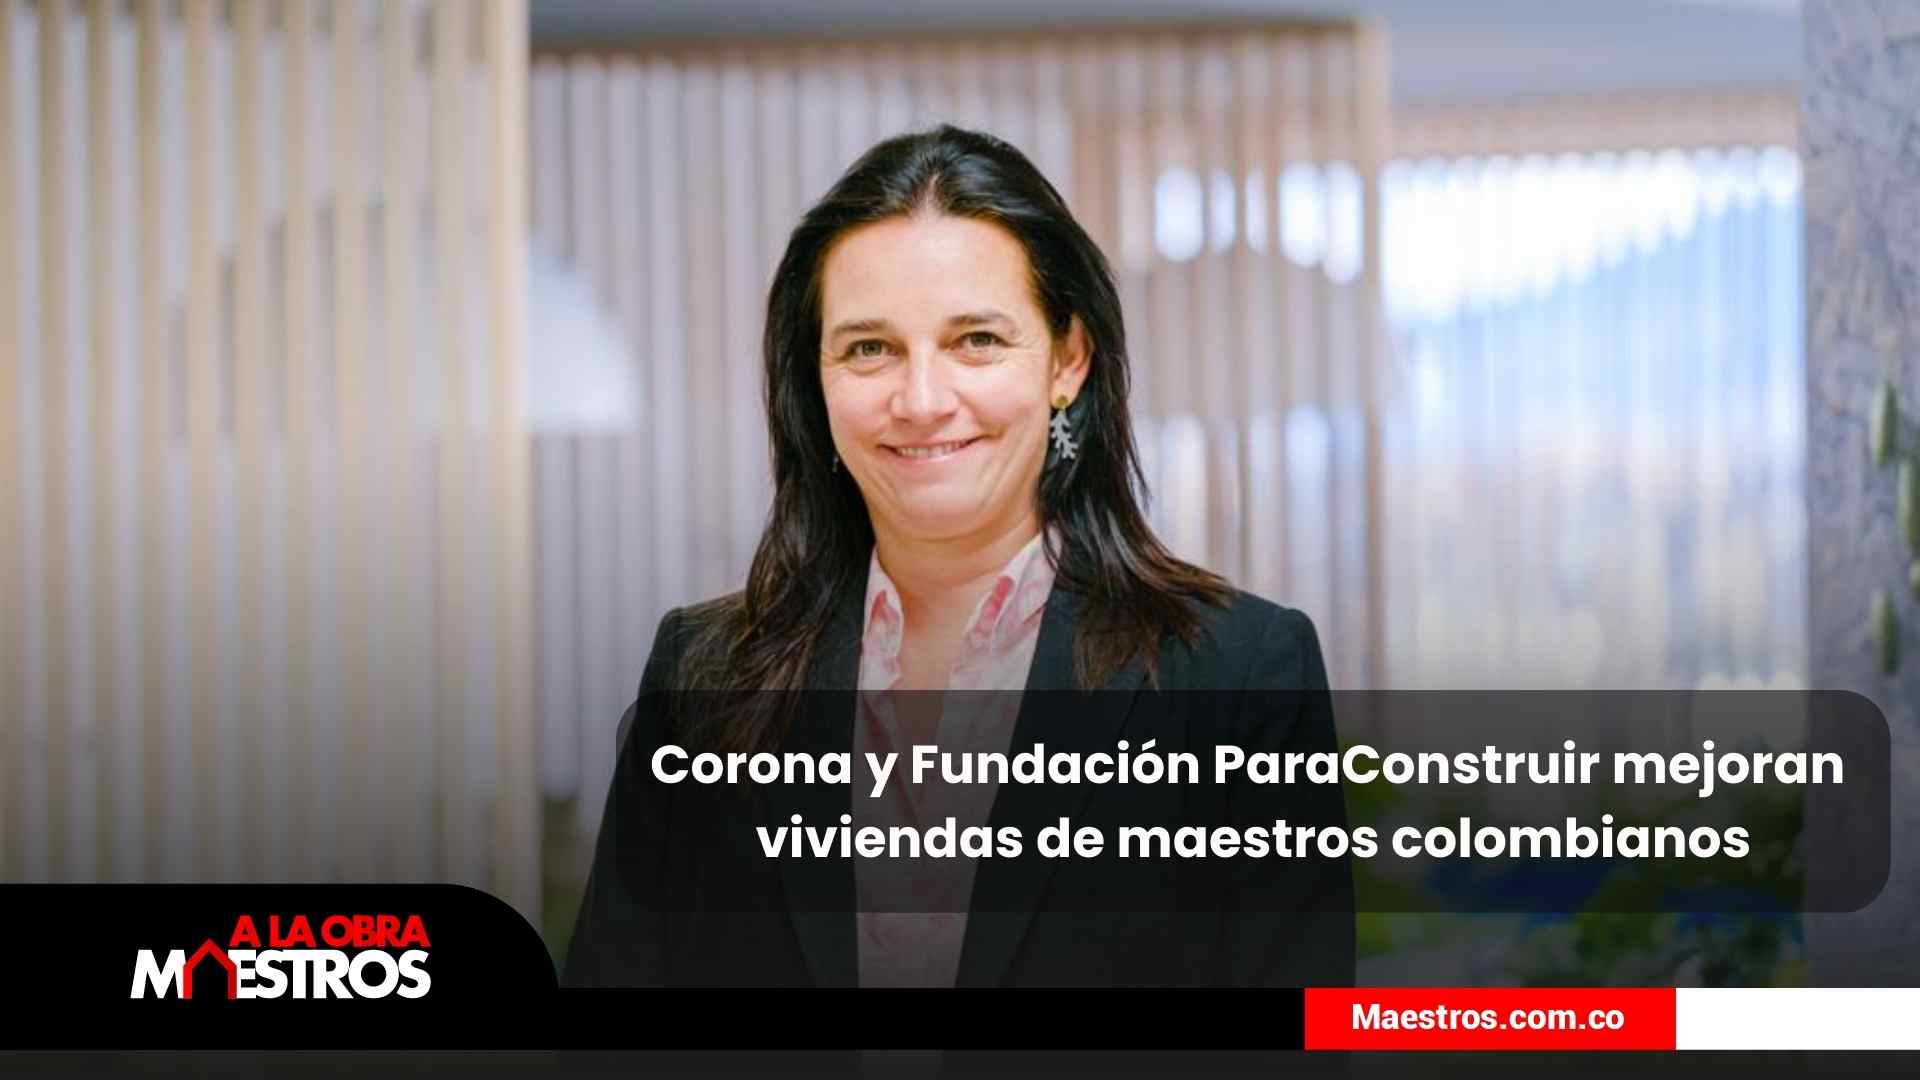 Corona y Fundación Paraconstruir mejoran viviendas